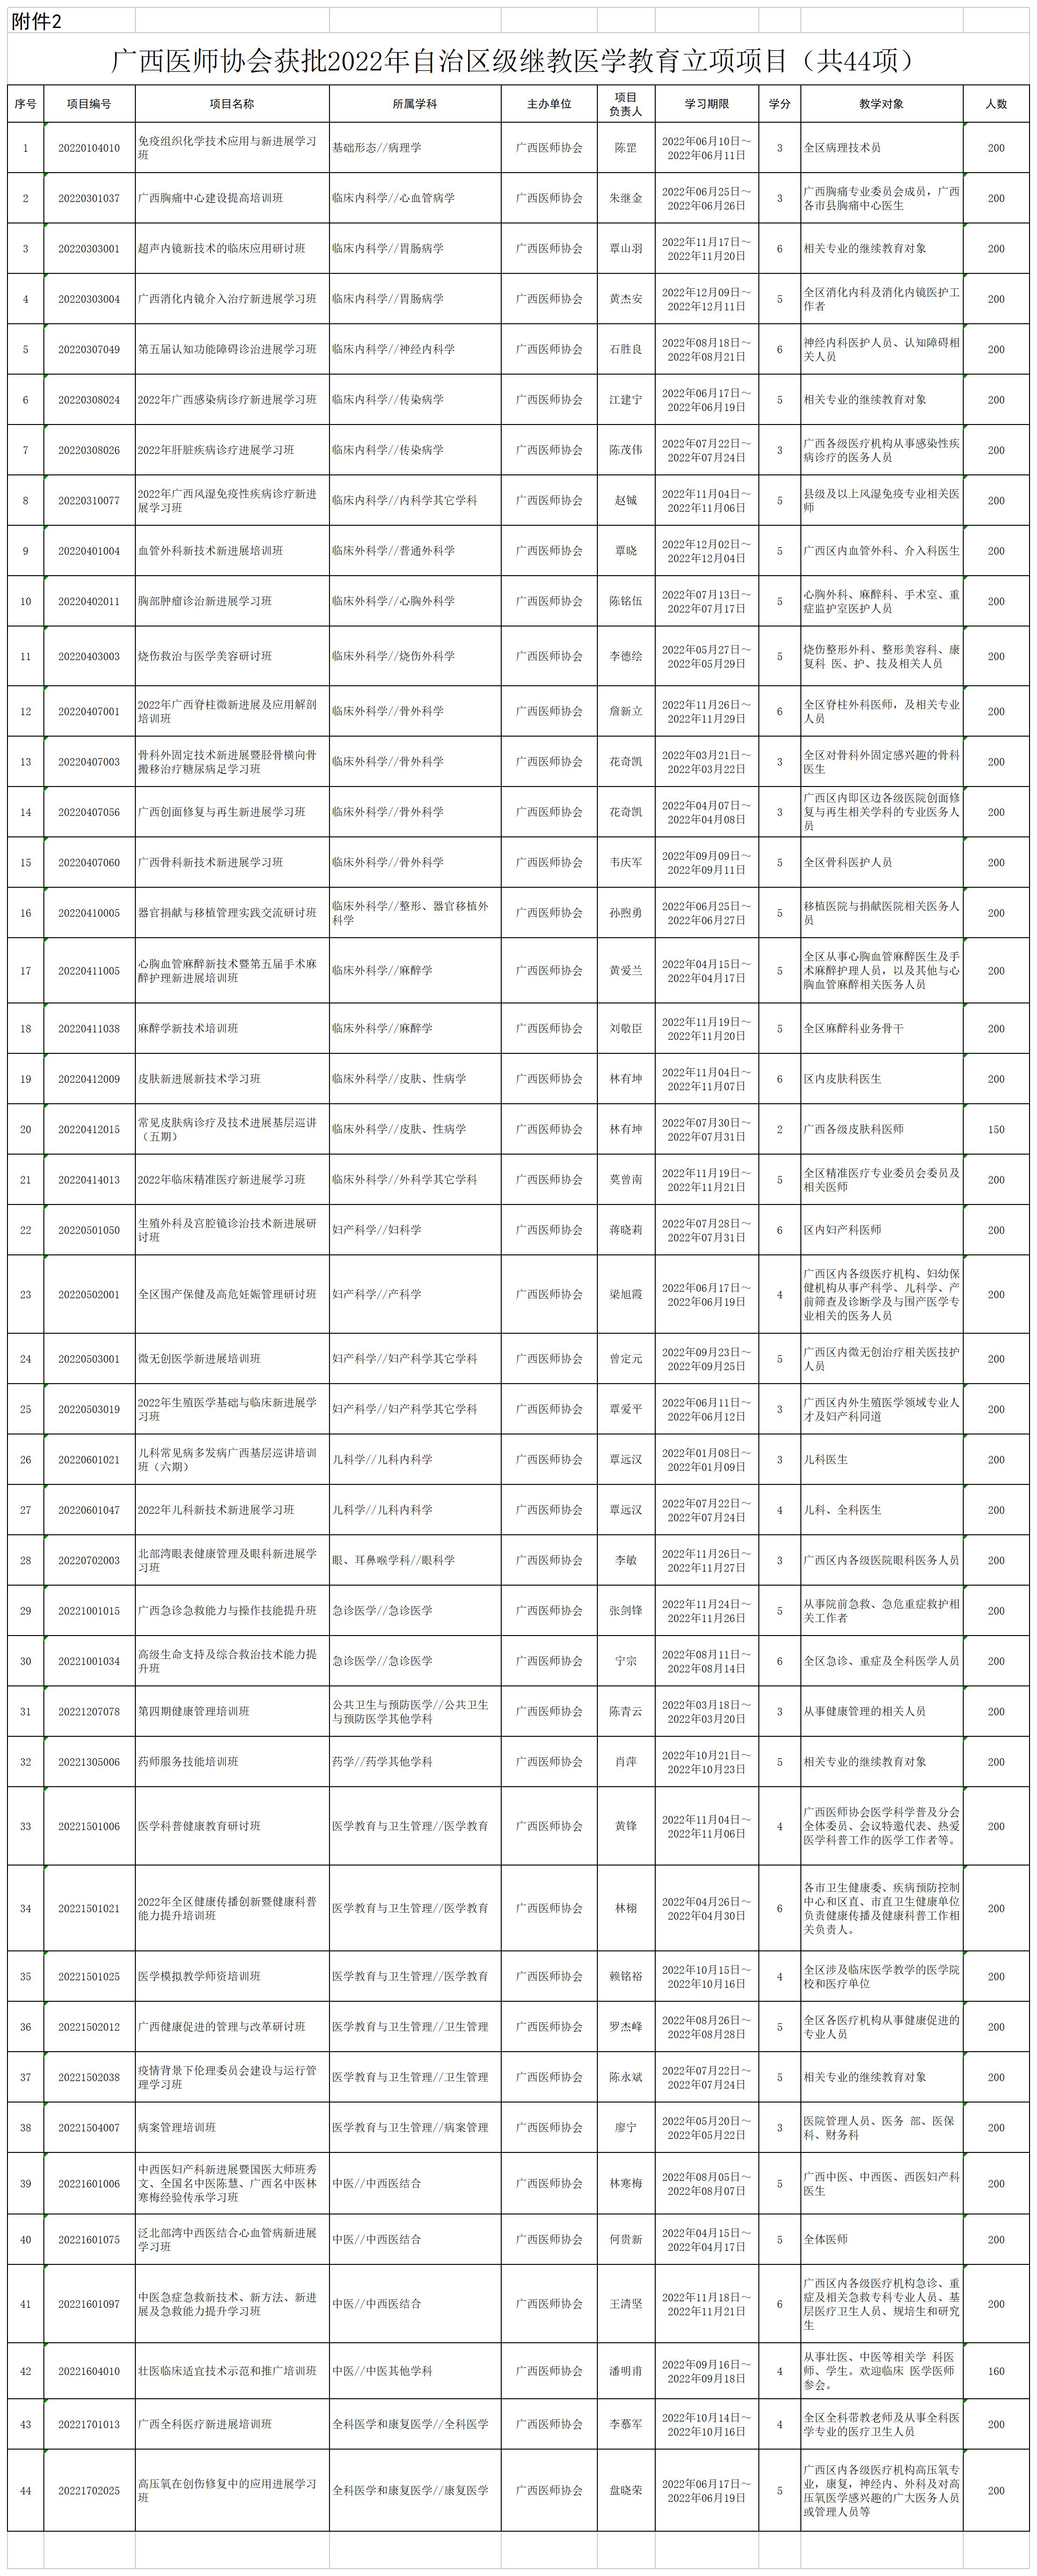 附件2：广西医师协会获批2022年自治区级继教医学教育立项项目（共44项）_A1J48.jpg